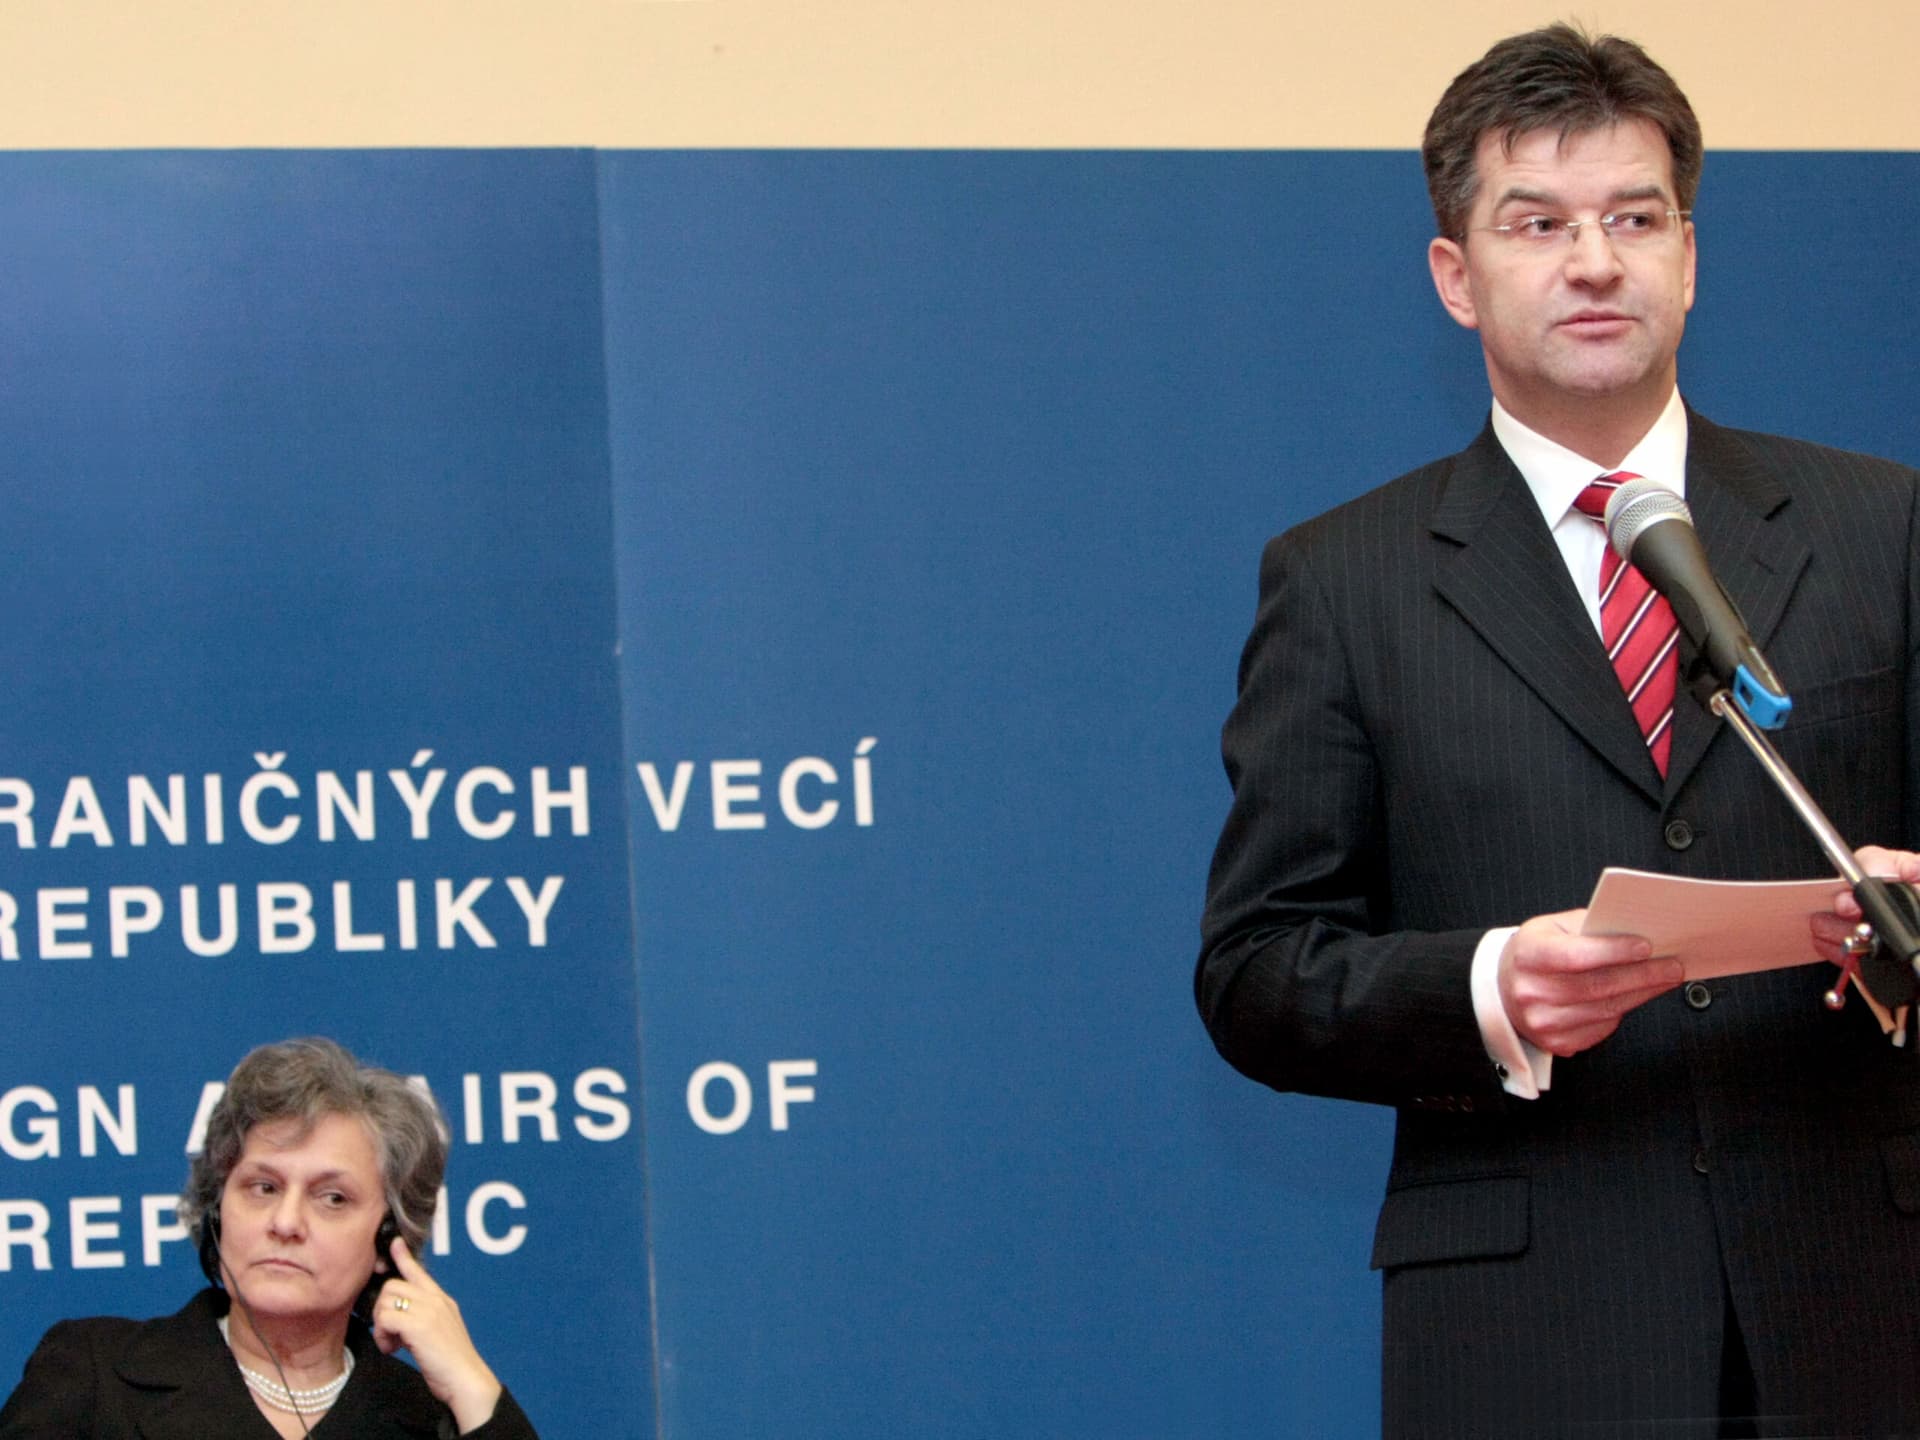 "Nem is úgy gondolta, mint ahogy mondta" - Lajčák magyarázta Fico bizonyítványát Európa előtt!